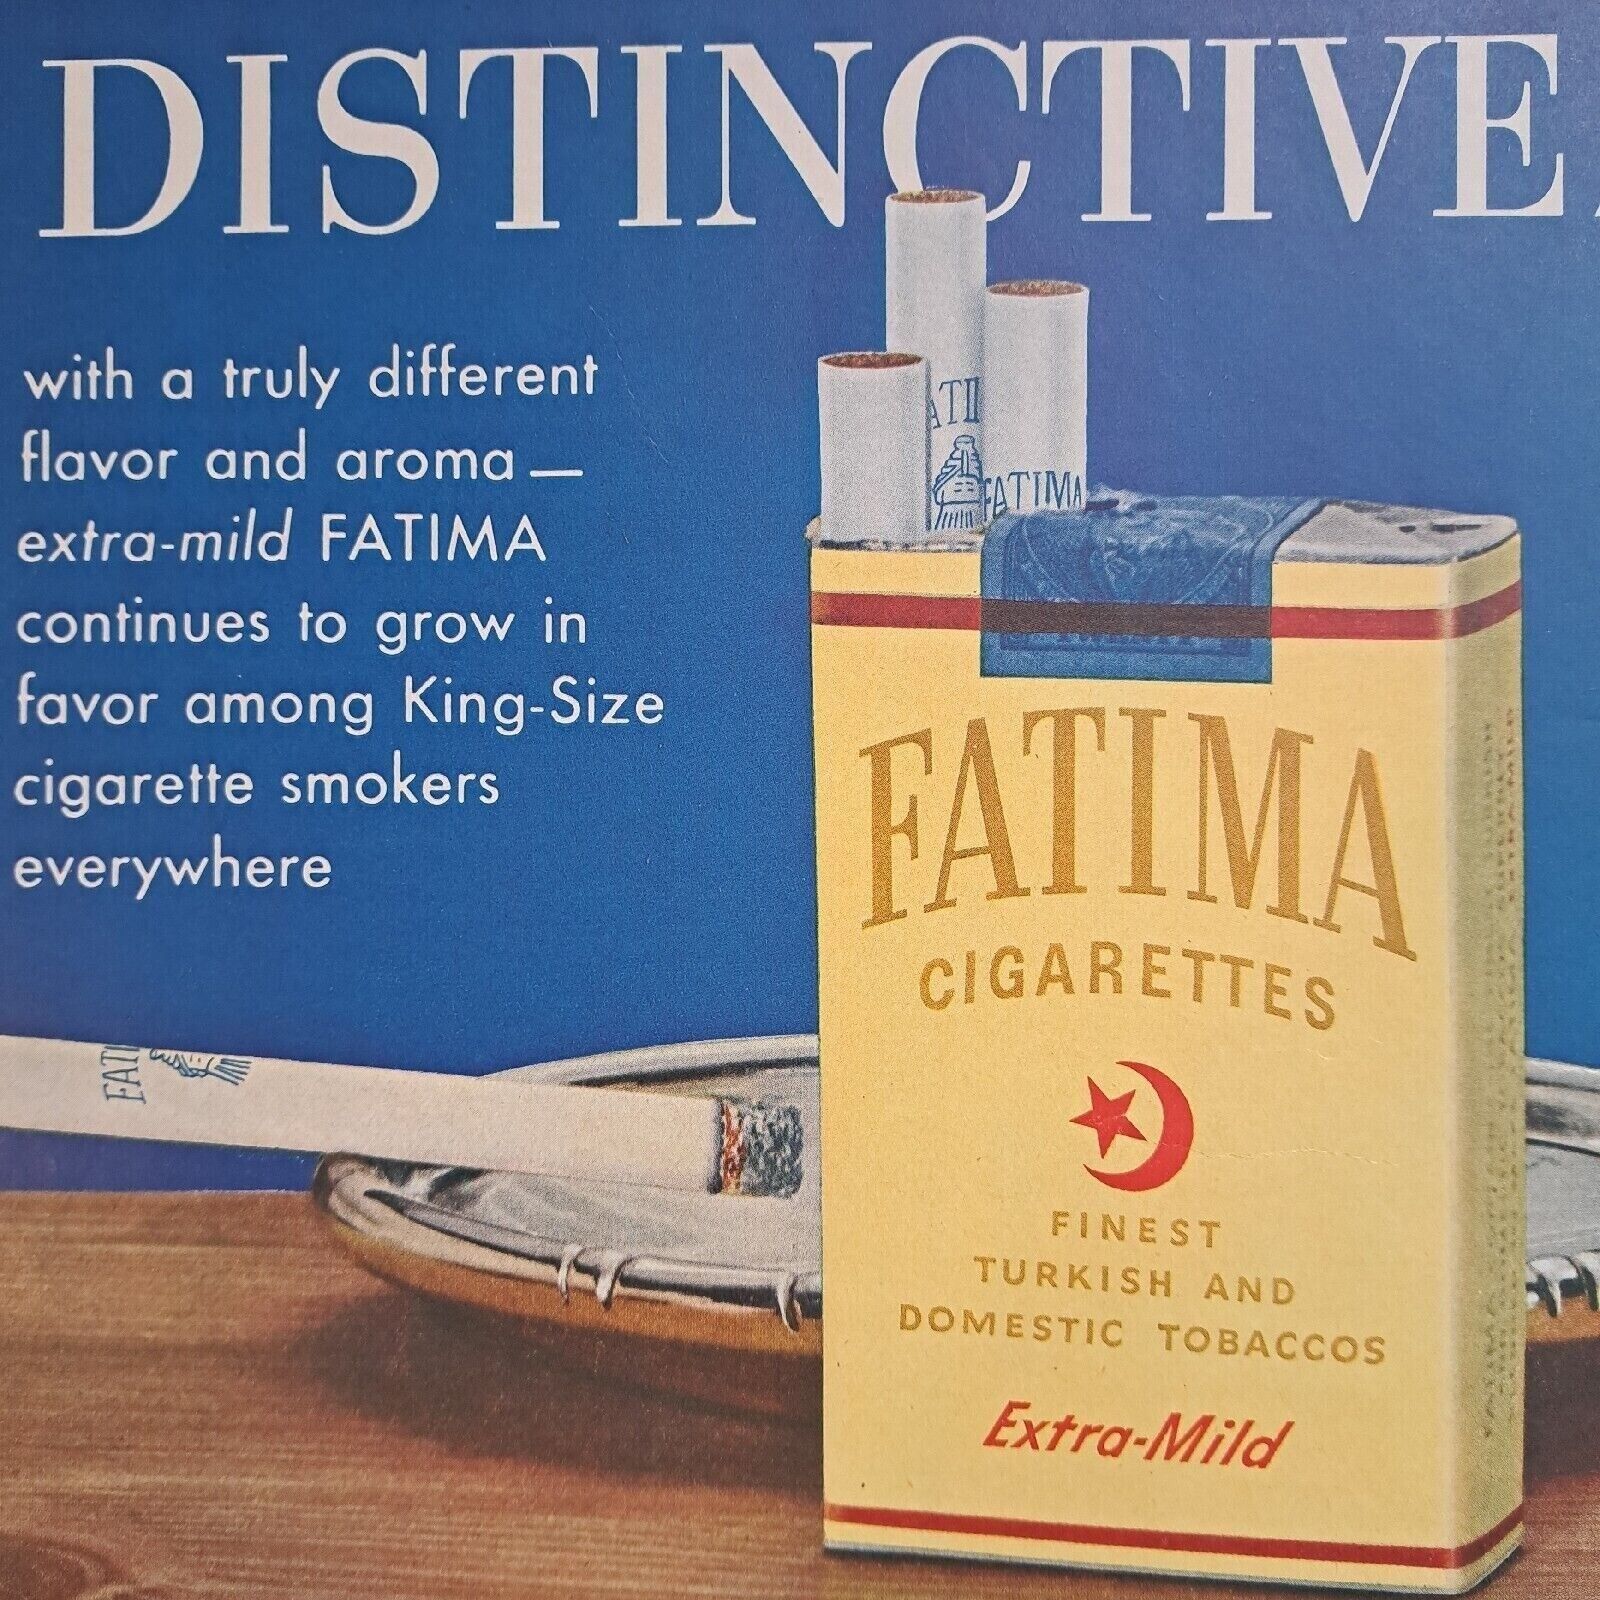 1952 Print Ad DISTINCTIVE FATIMA EXTRA MILD CIGARETTES LIGGETT & MYERS TOBACCO